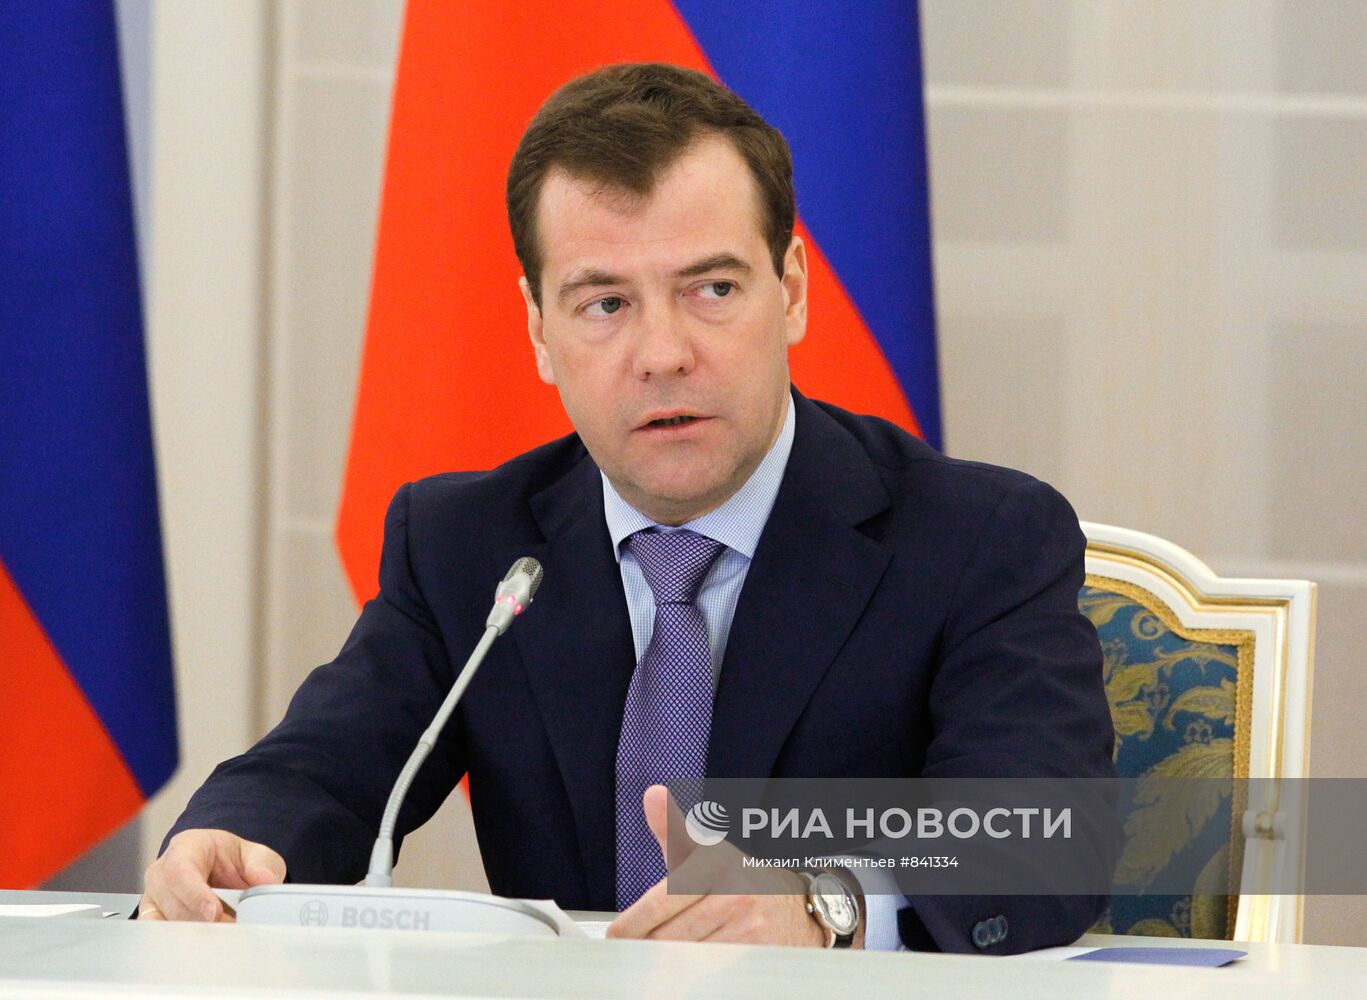 Дмитрий Медведев встретился с руководством Федерального собрания